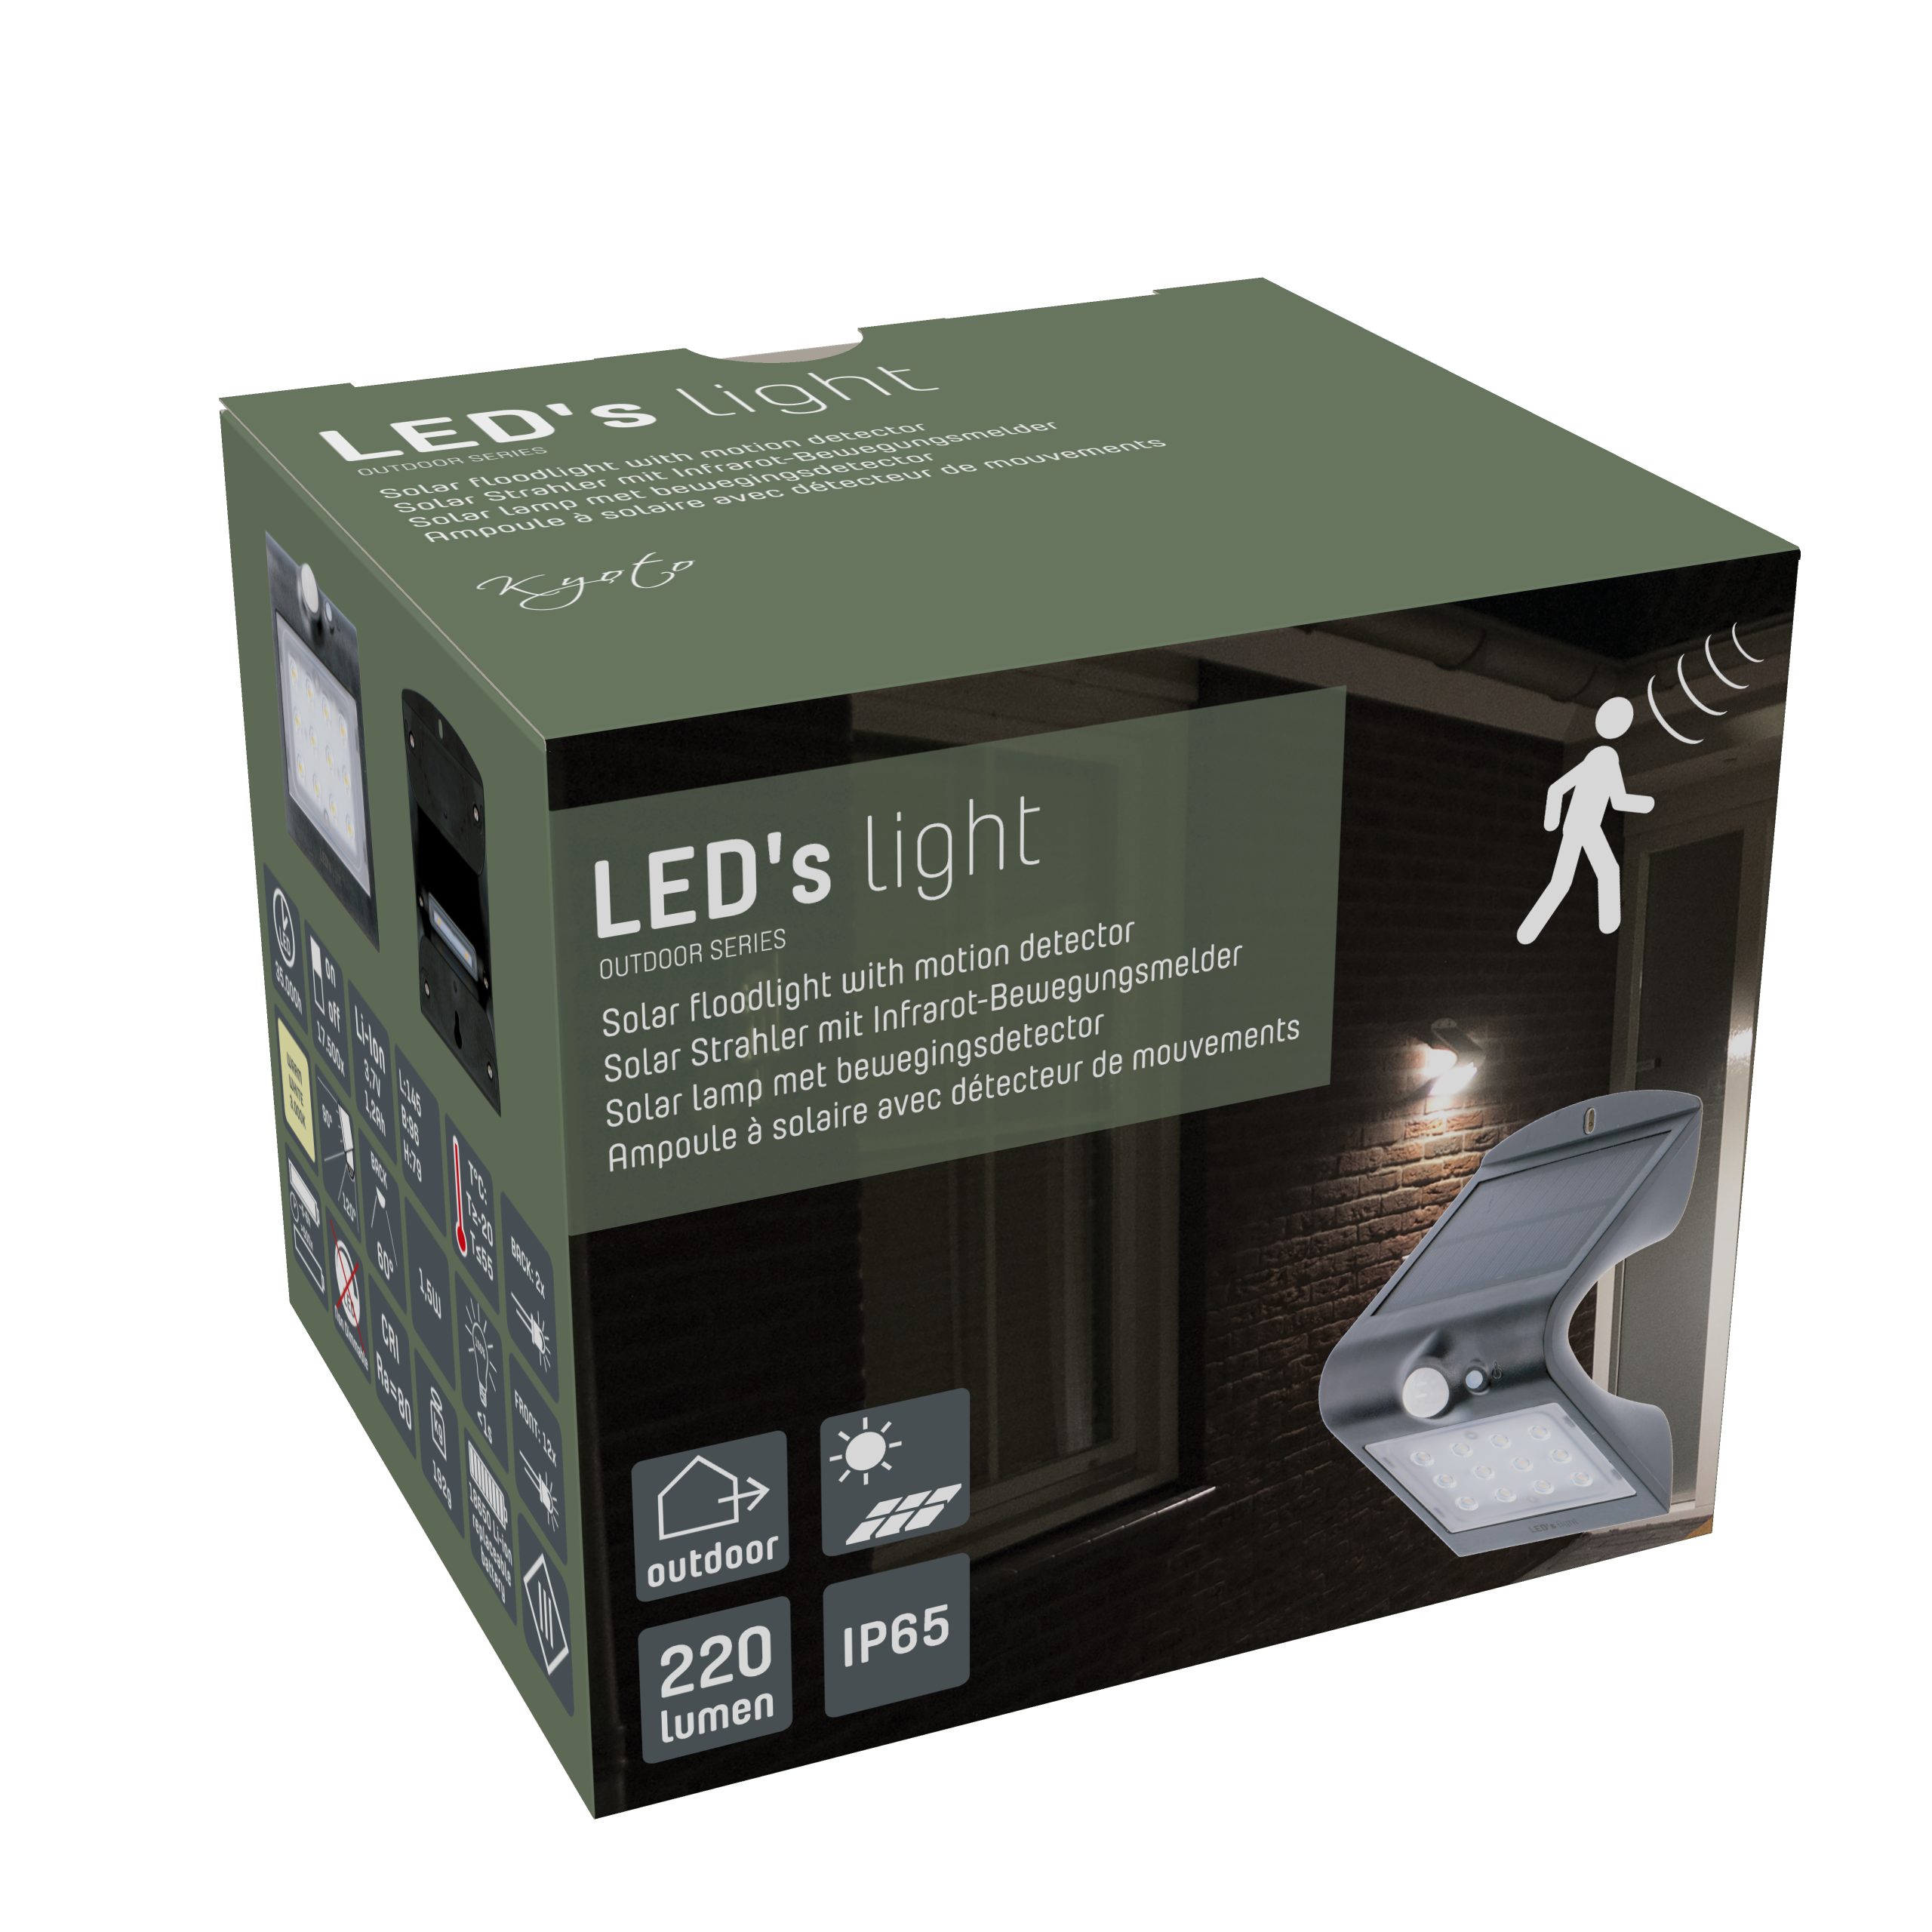 1,5 Bewegungsmelder warmweiß LED LED's Außenleuchte, LED, Solar Solarleuchte Watt light IP65 Backlight 0300411 LED mit